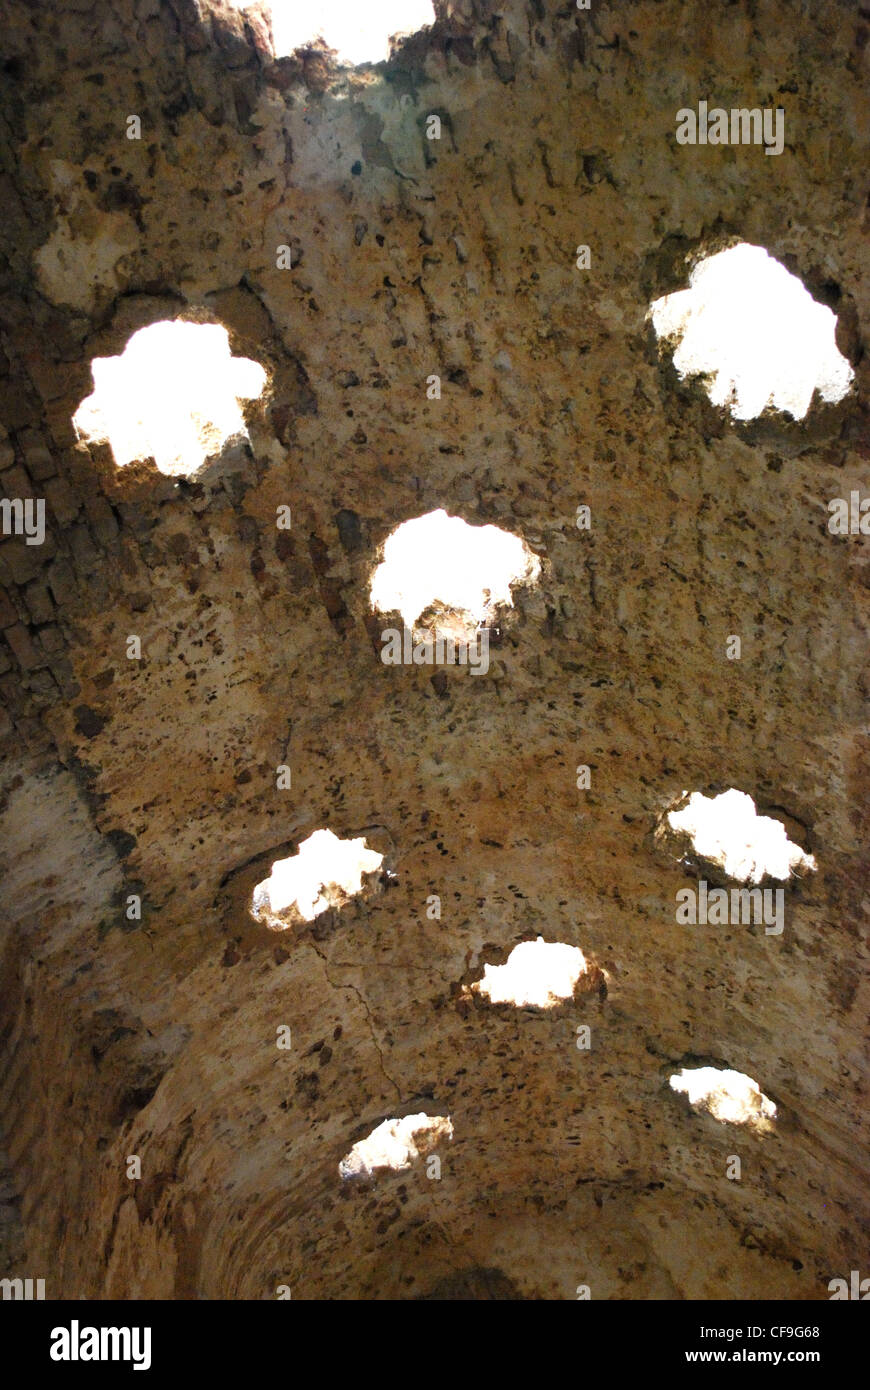 Puits de lumière en forme d'étoile à l'intérieur des bains arabes, Ronda, Province de Malaga, Andalousie, Espagne, Europe de l'Ouest. Banque D'Images